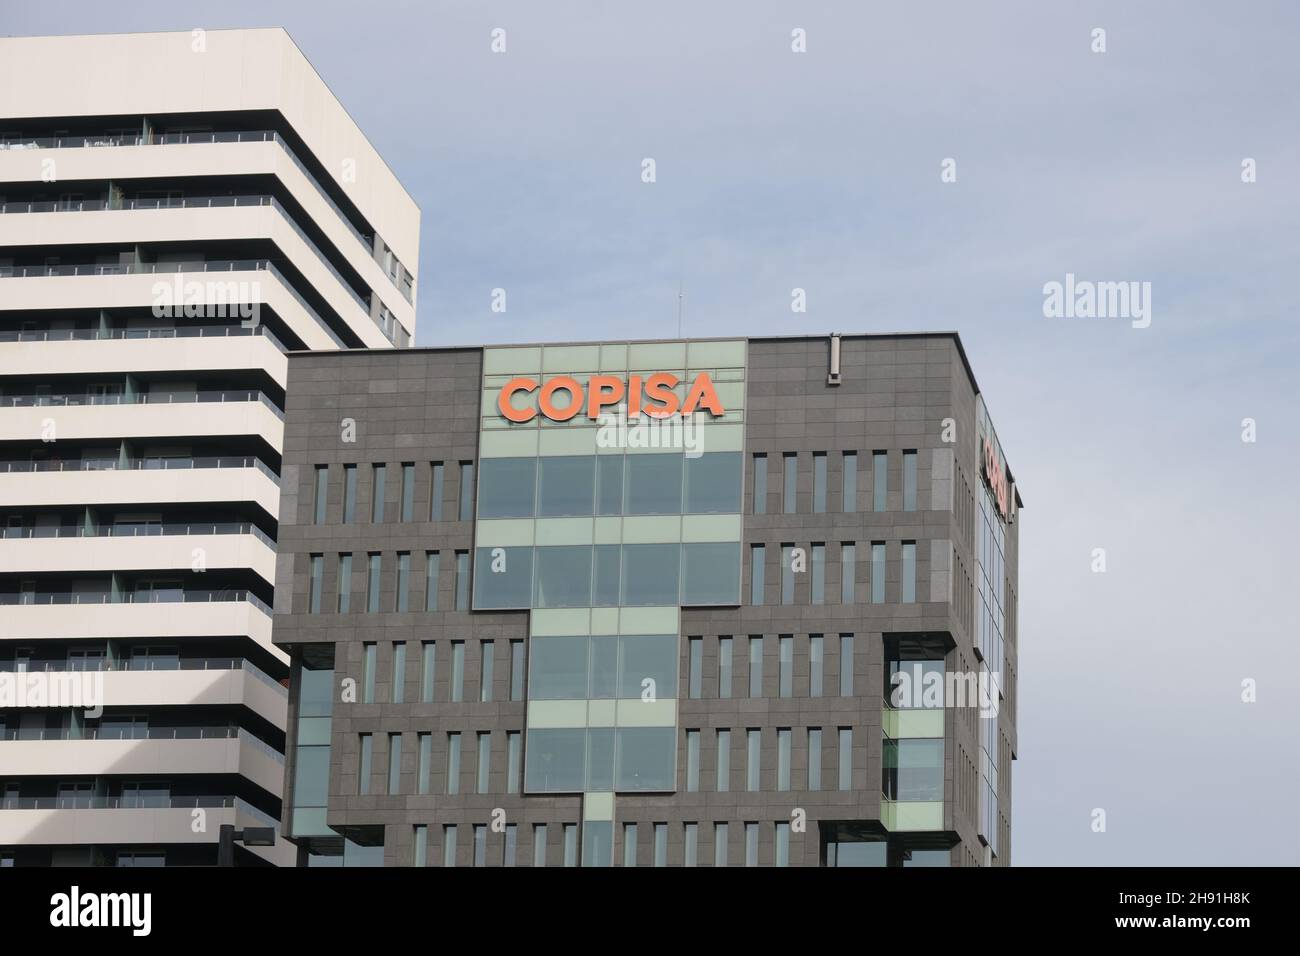 Barcelona, Spanien - 5. November 2021: COPISA-Firmenzeichen, illustrative redaktionelle Verwendung. Stockfoto